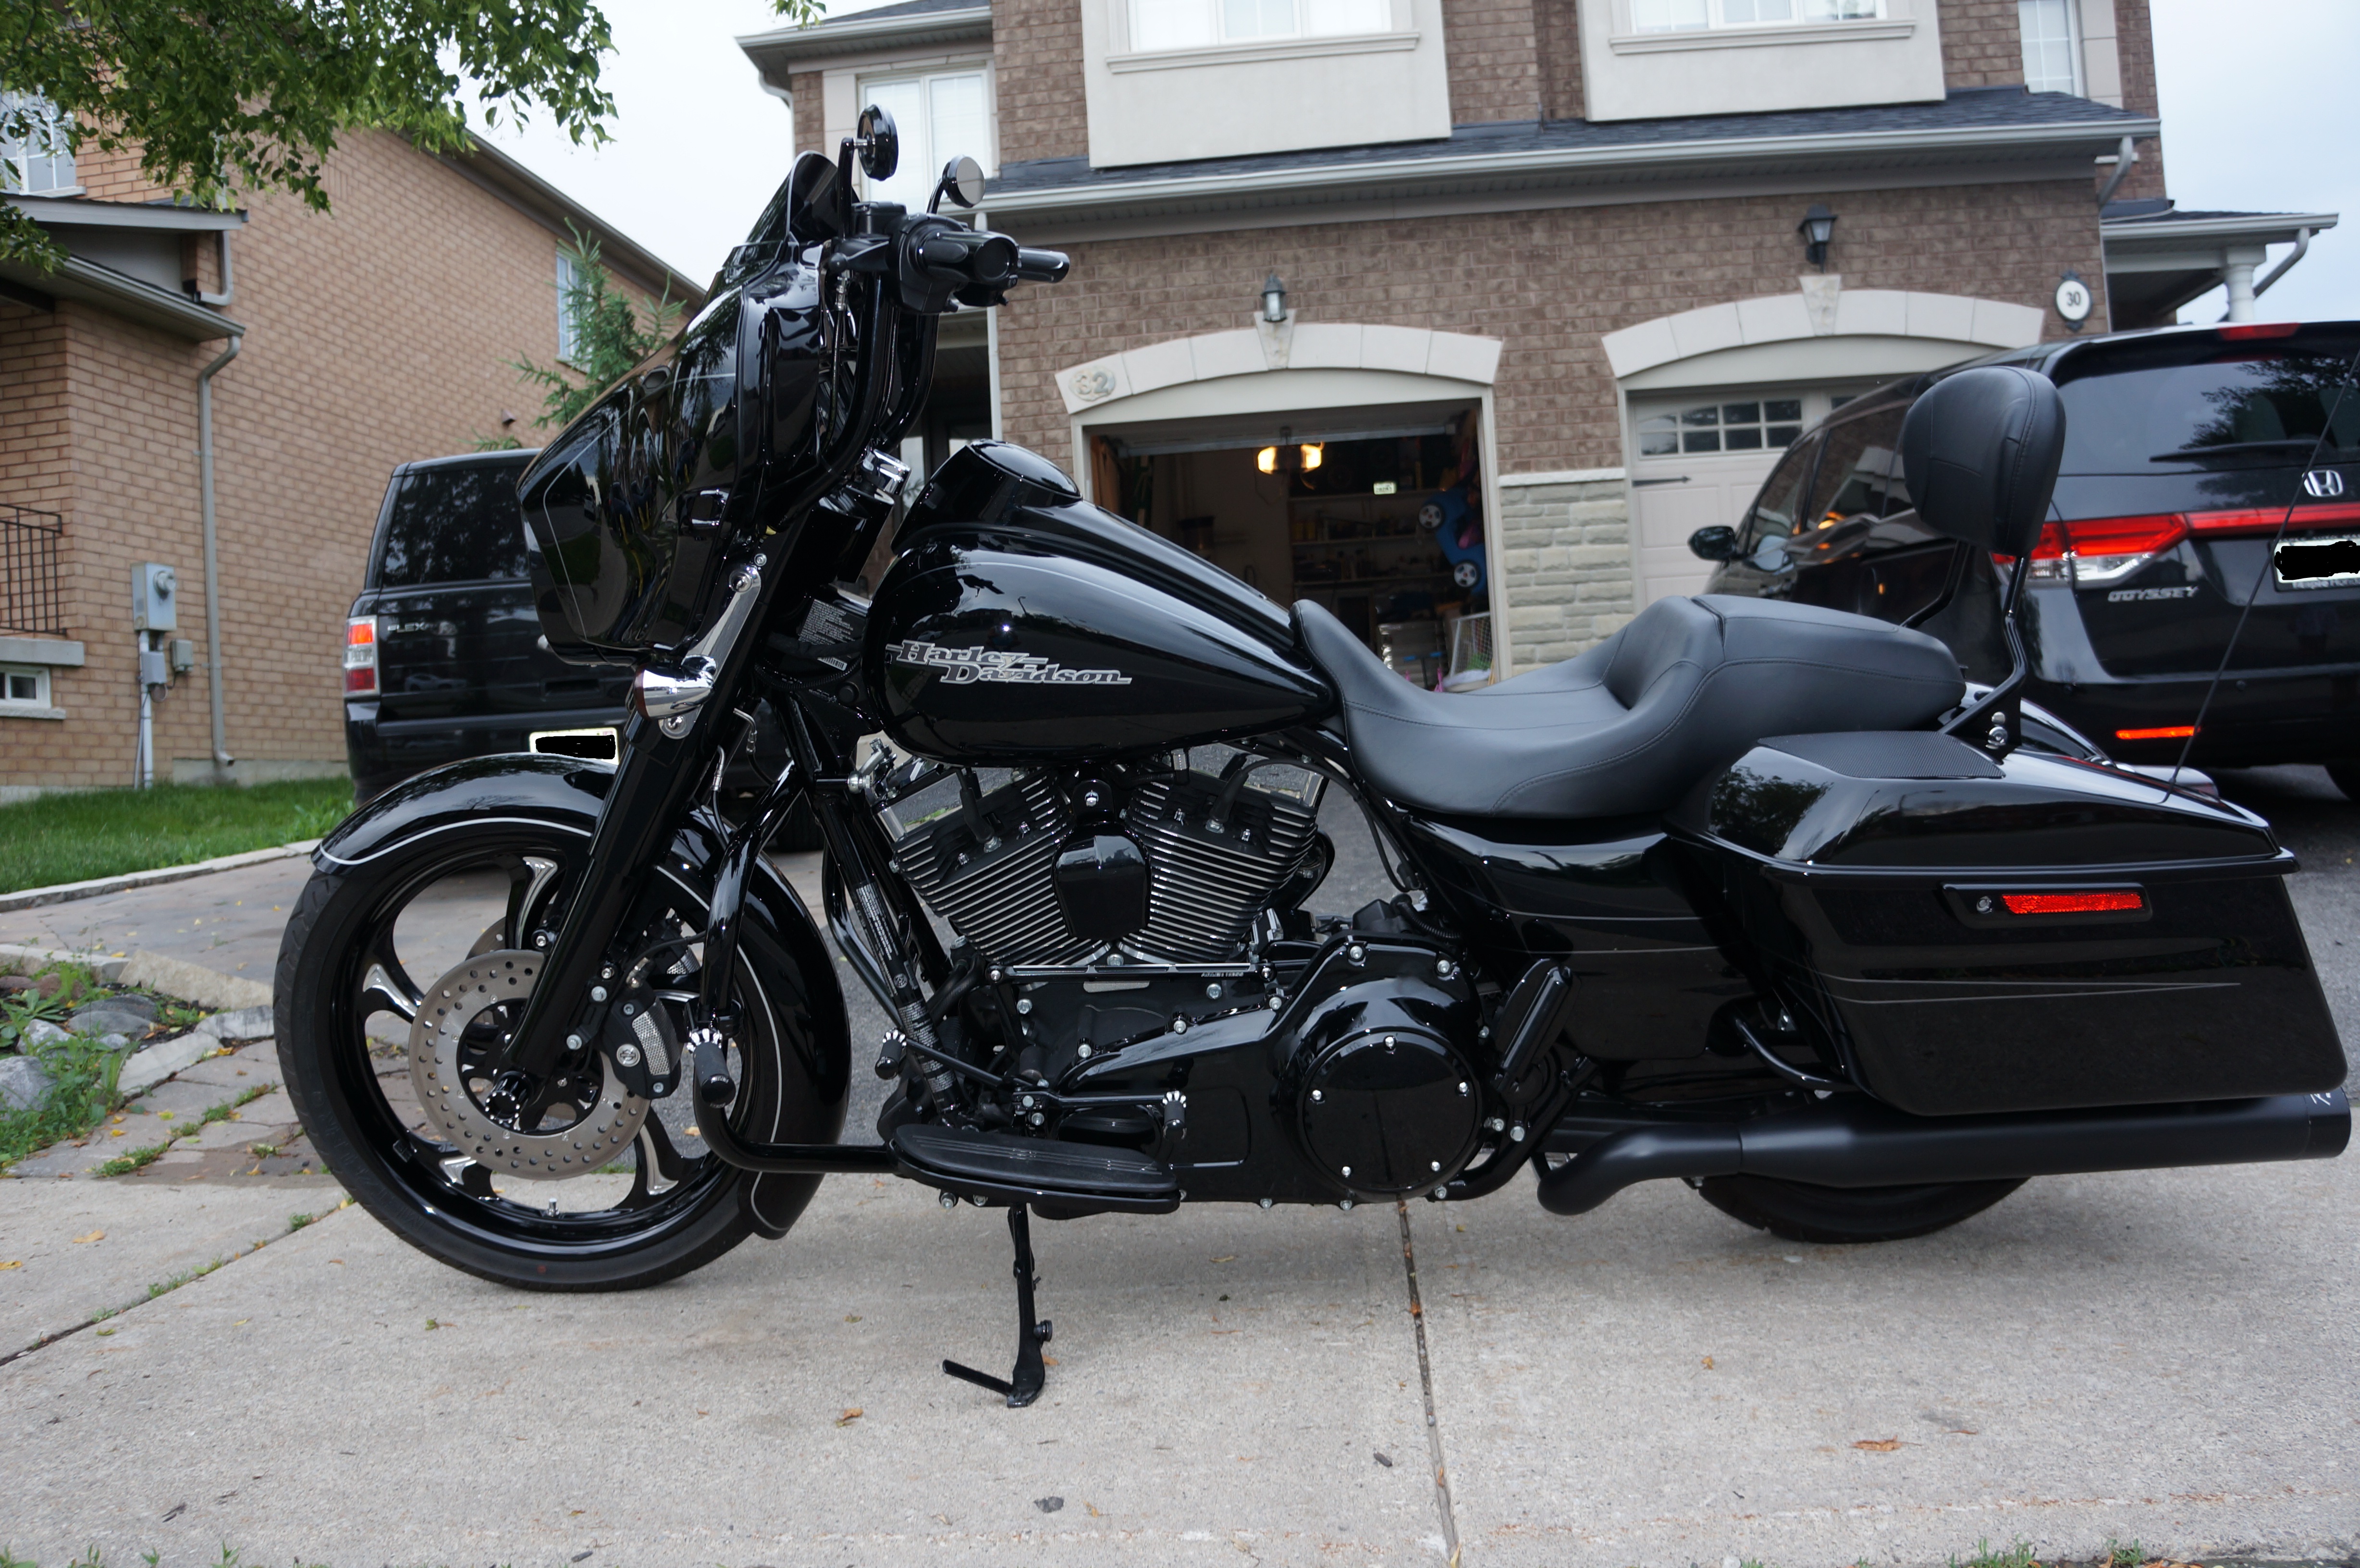 2014 Street glide for sale - Harley Davidson Forums